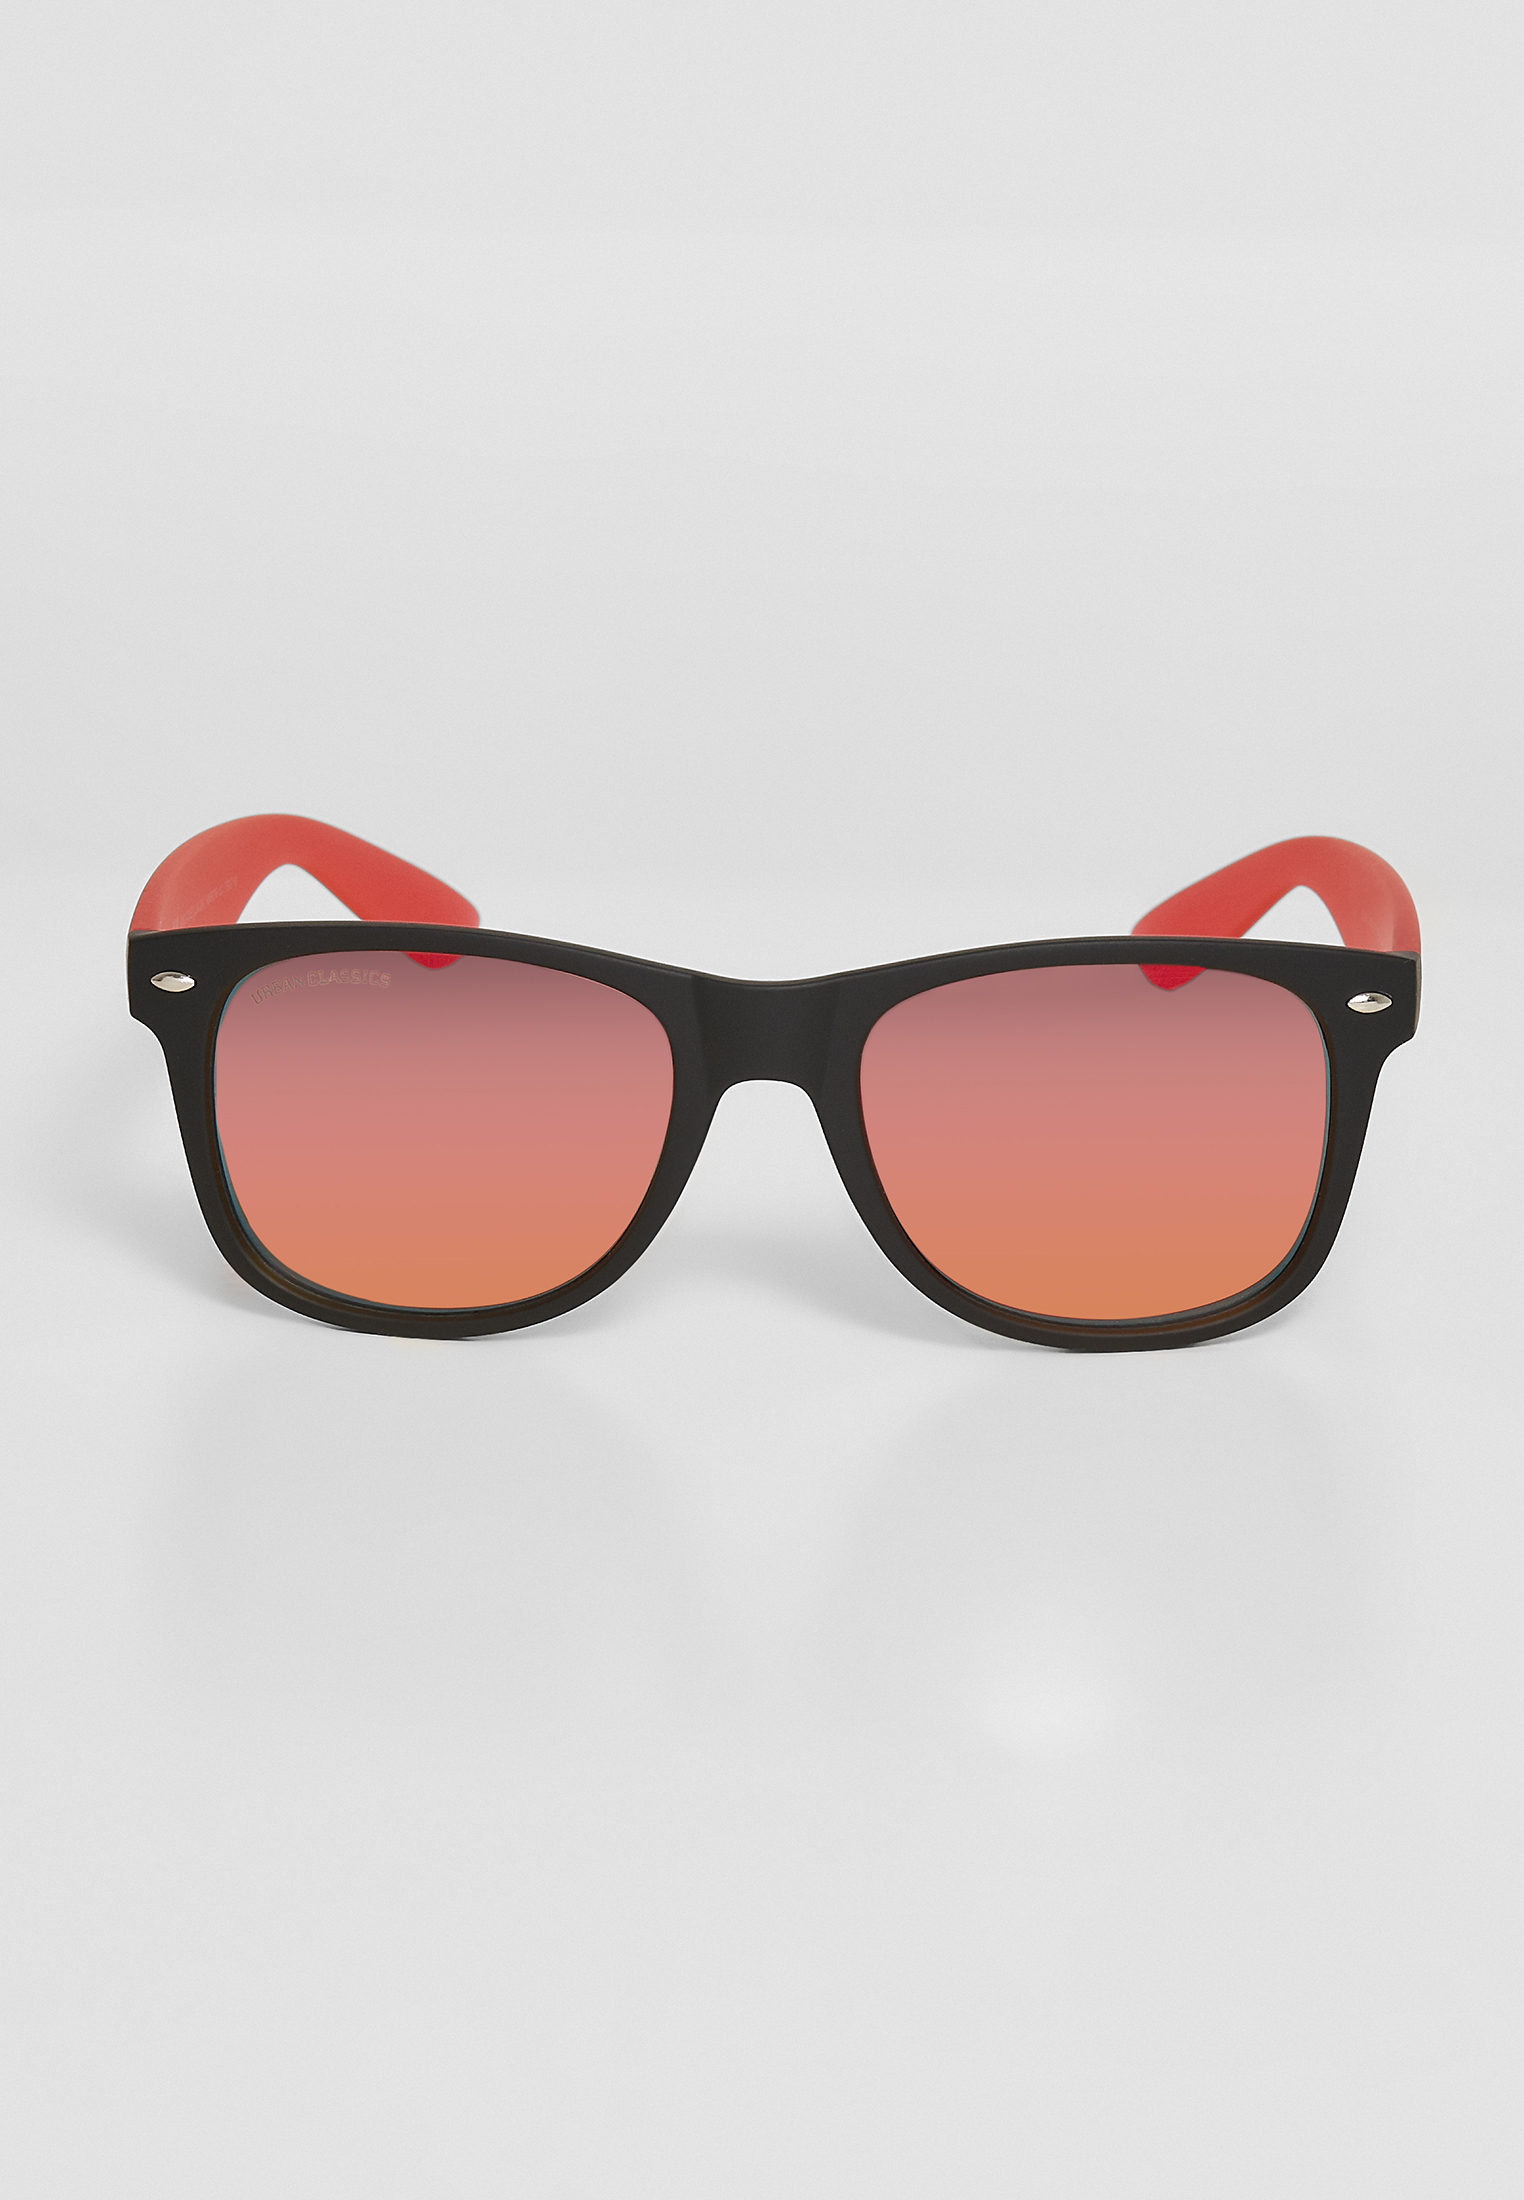 Sonnenbrillen Sunglasses Likoma Mirror UC in Farbe black/red